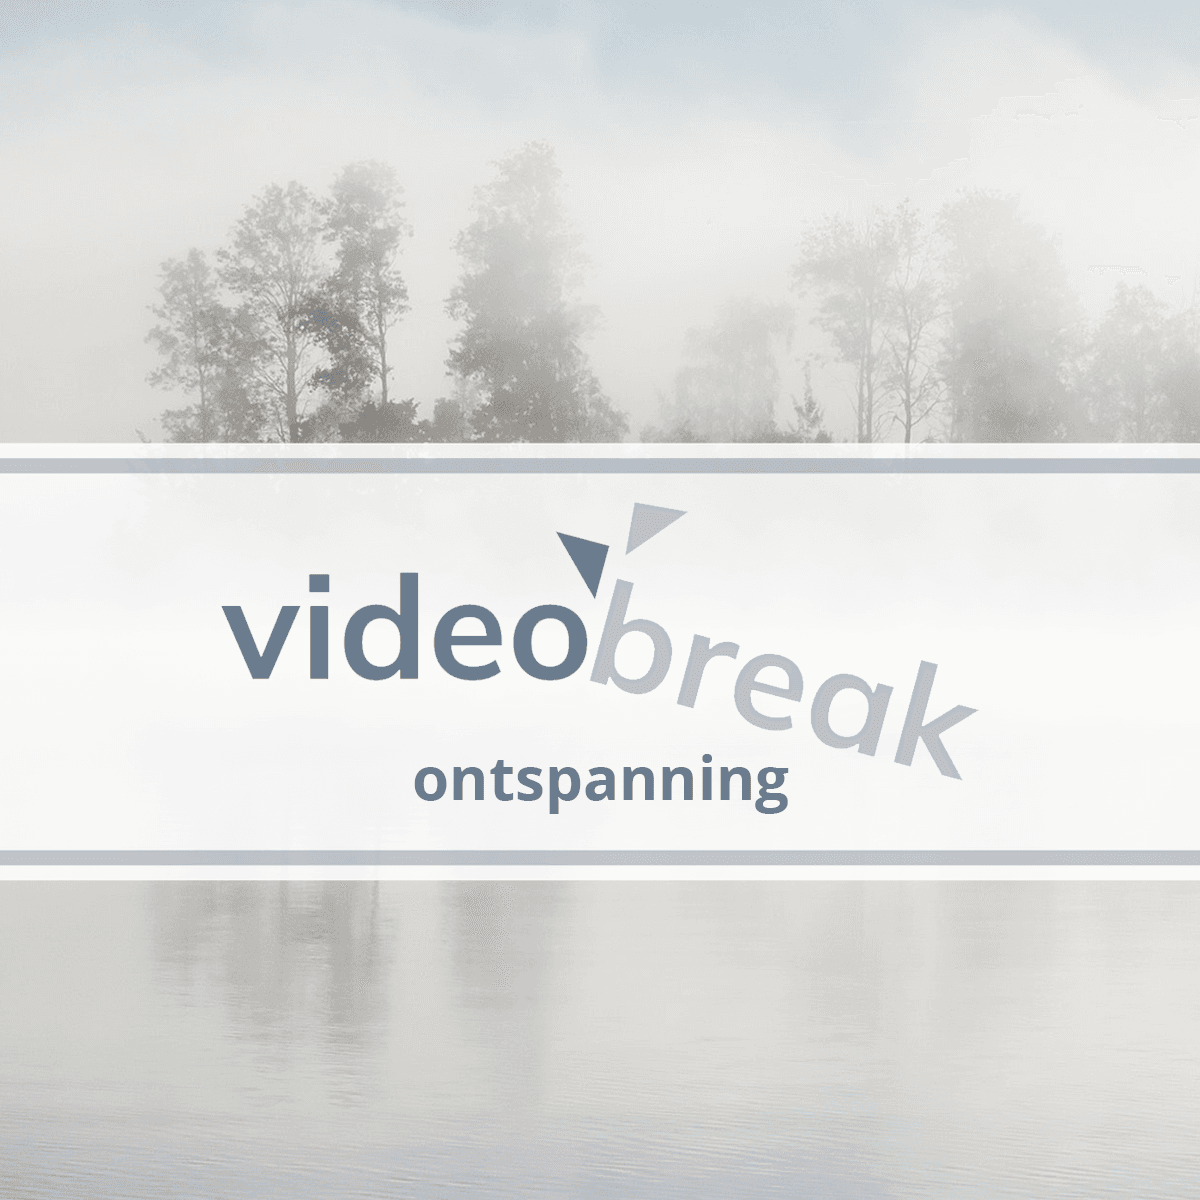 Videobreak